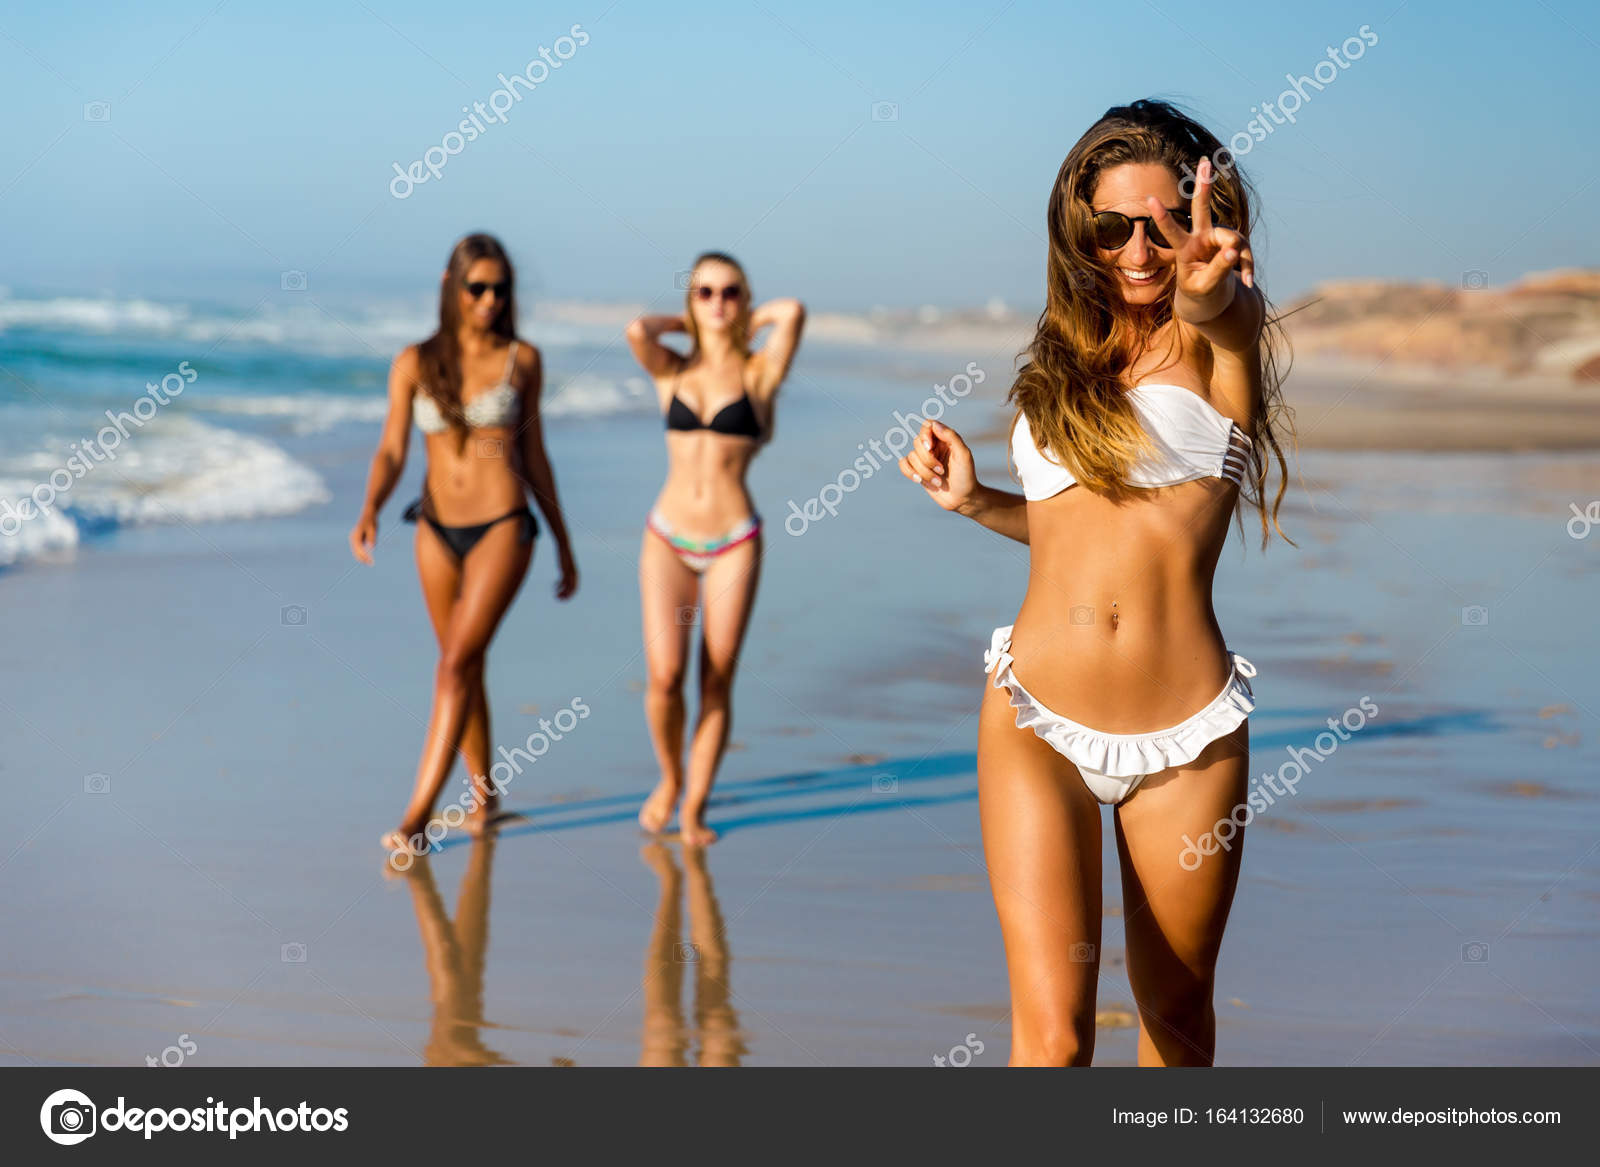 Meninas bonitas andando na praia fotos, imagens de © ikostudio #149291426